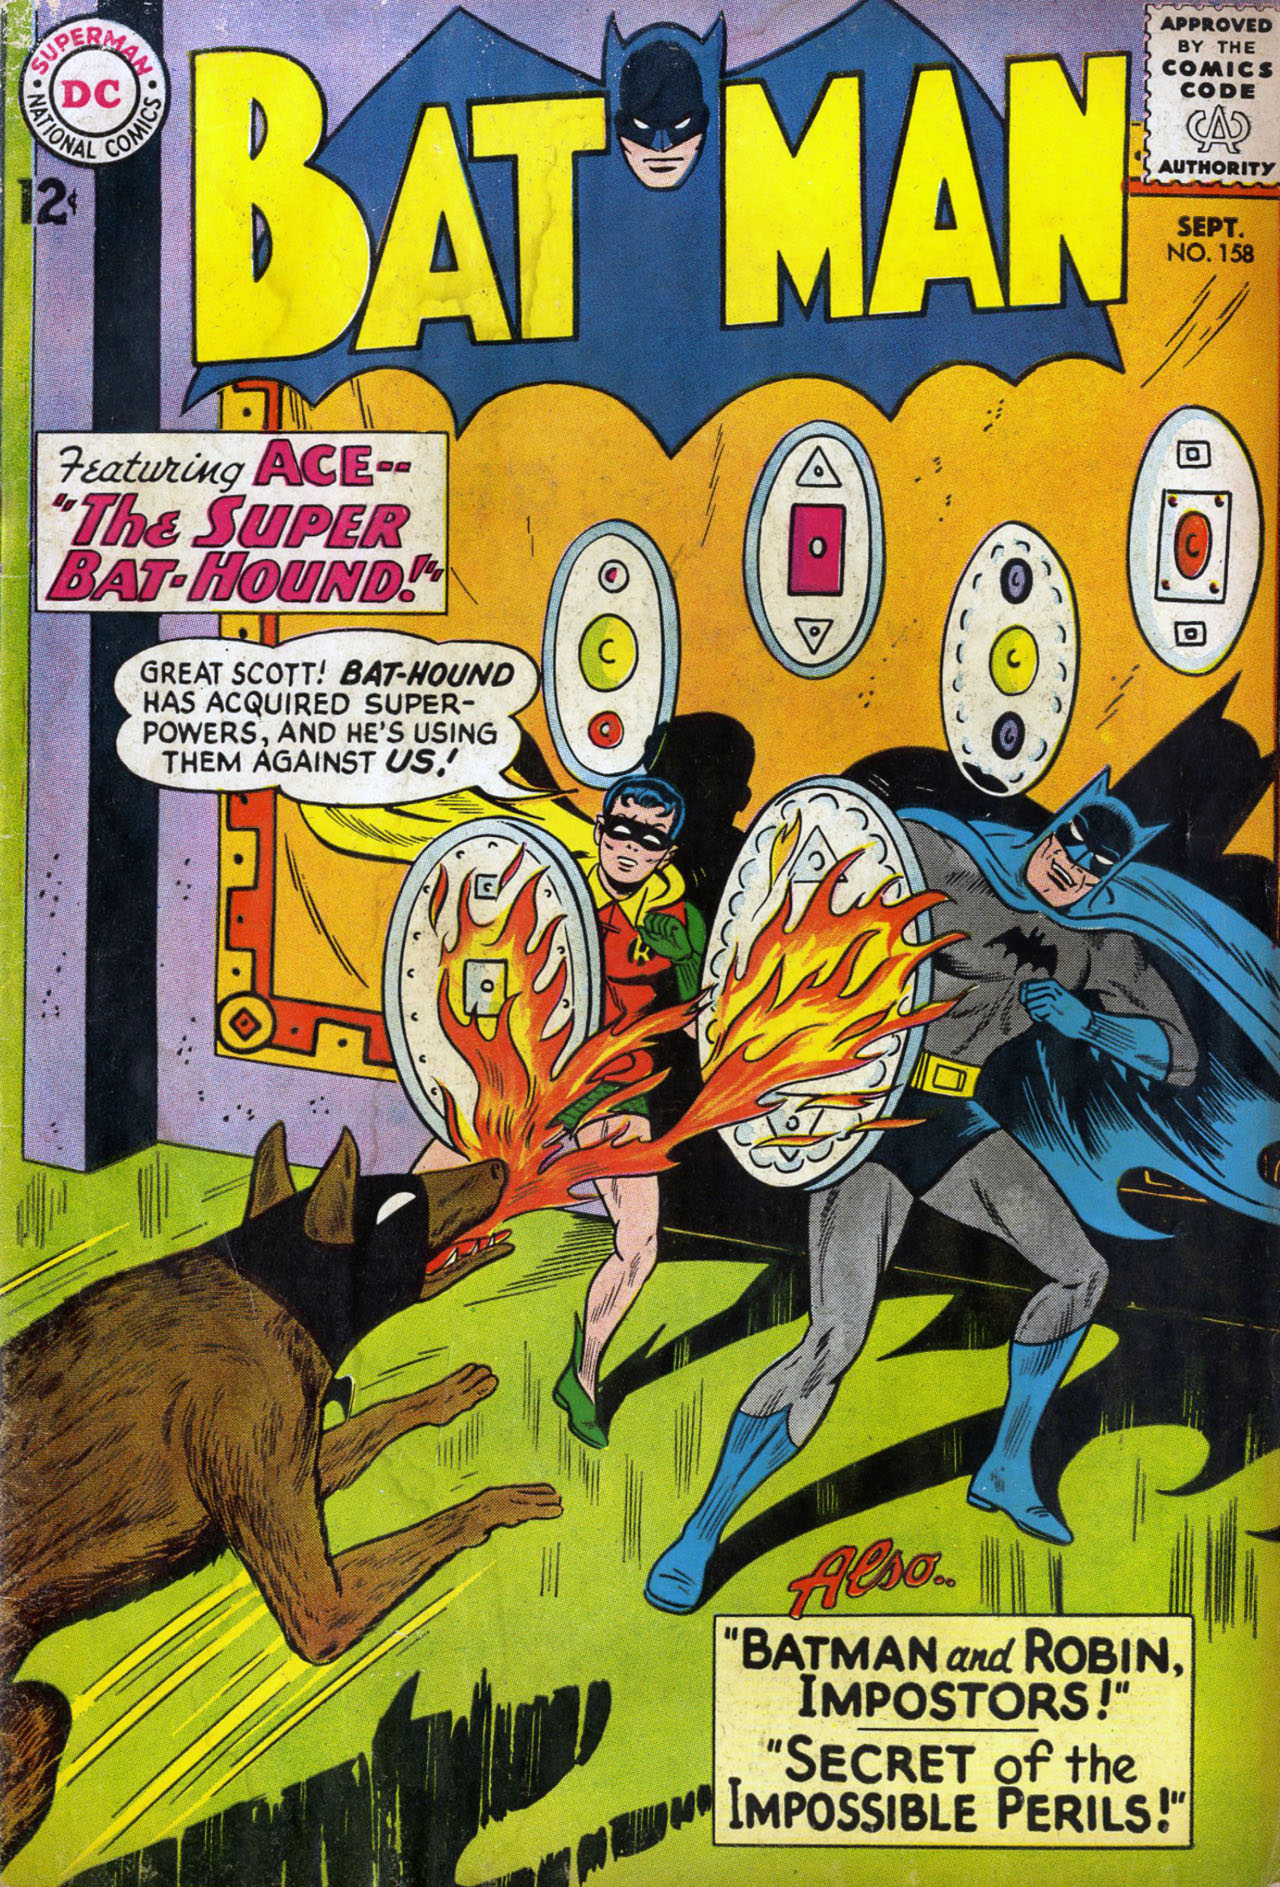 AQUAMAN #1 DC Comics #158 